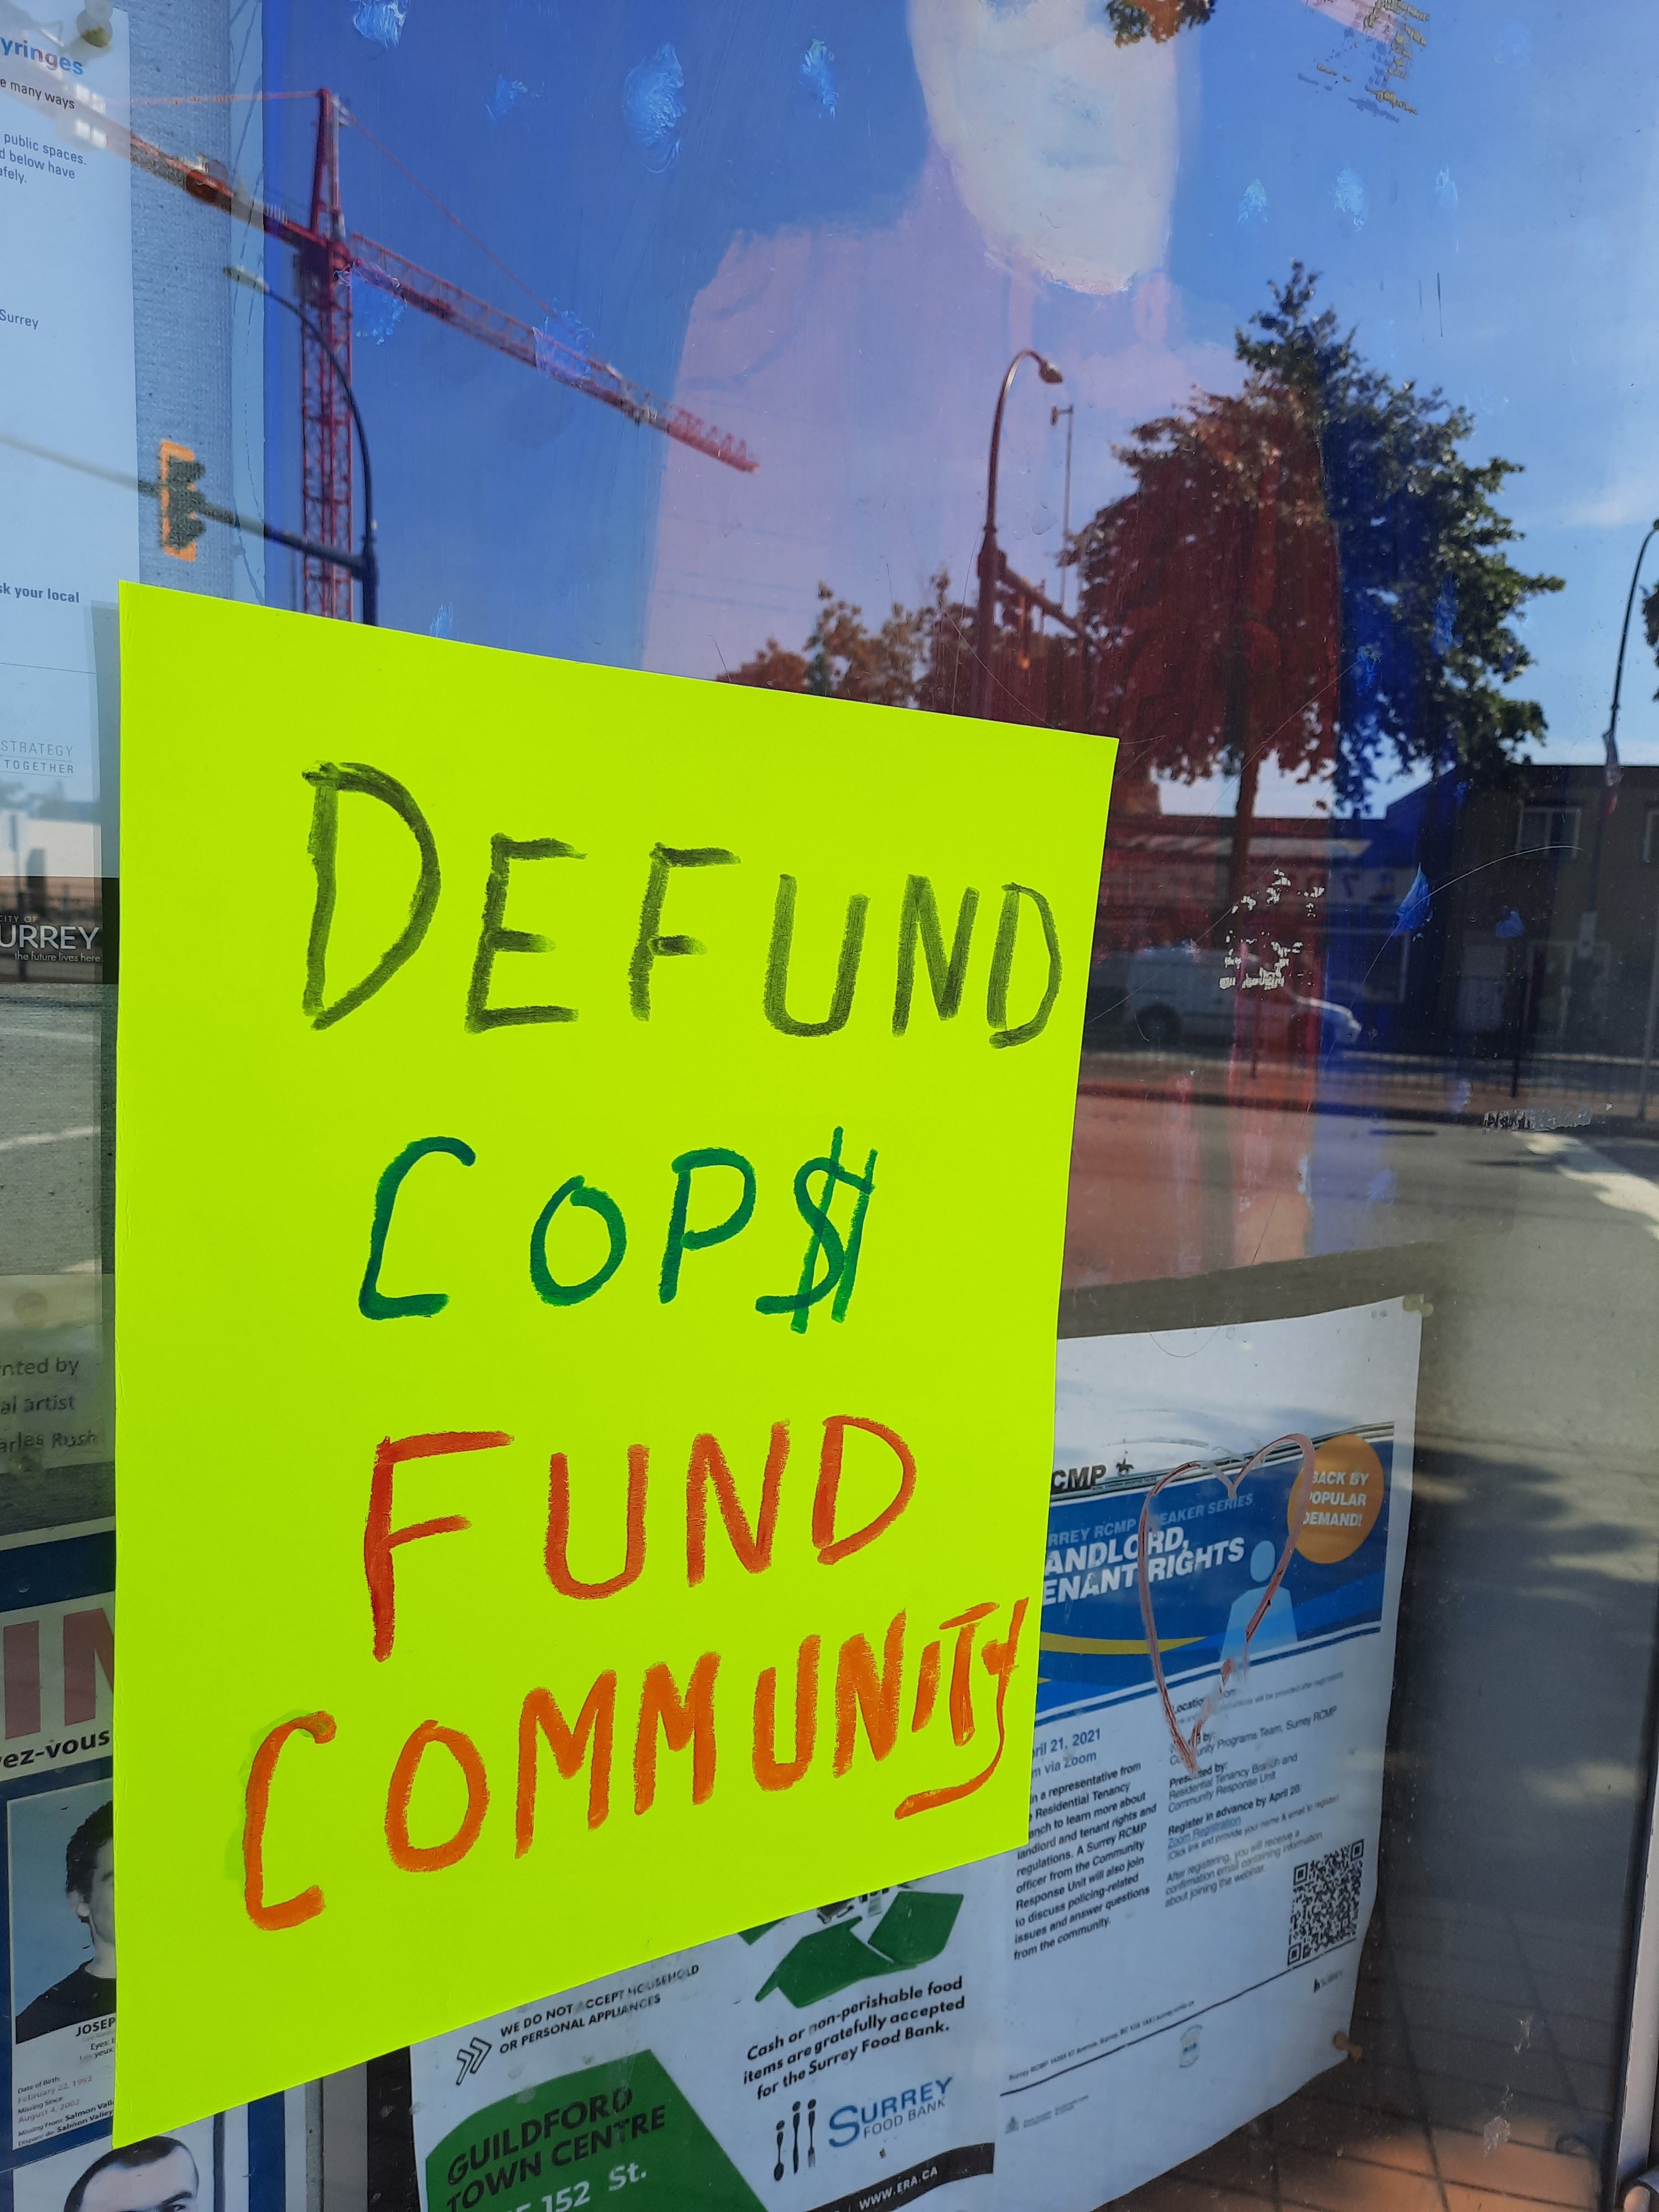 Defund Cop$ Fund Community